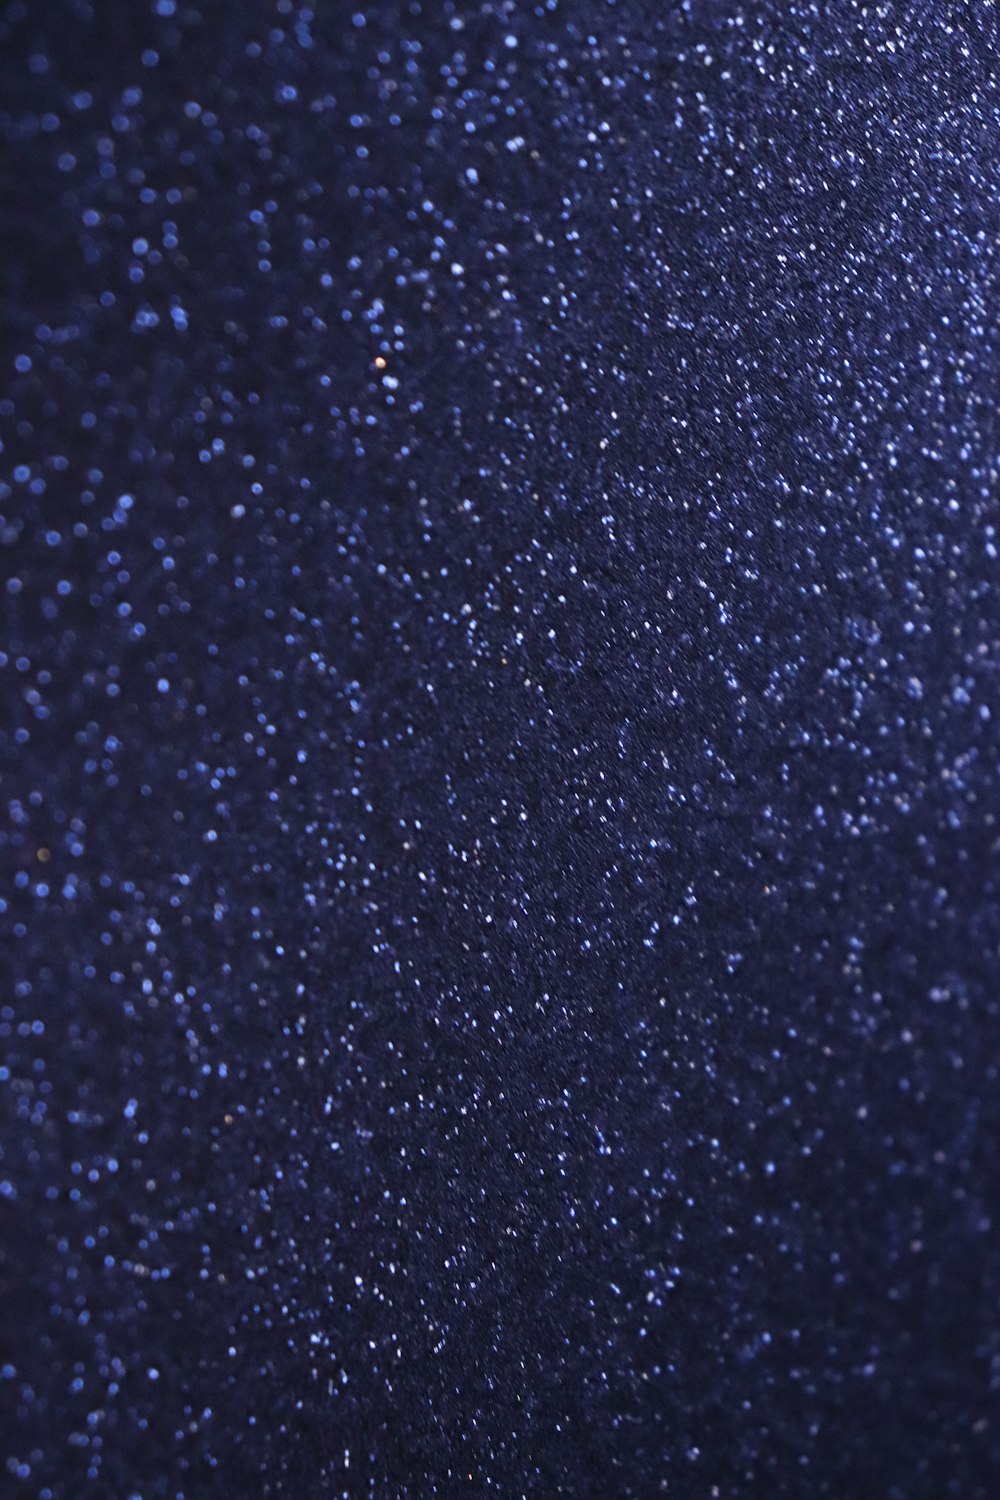 Un fond bleu foncé avec beaucoup d’étoiles